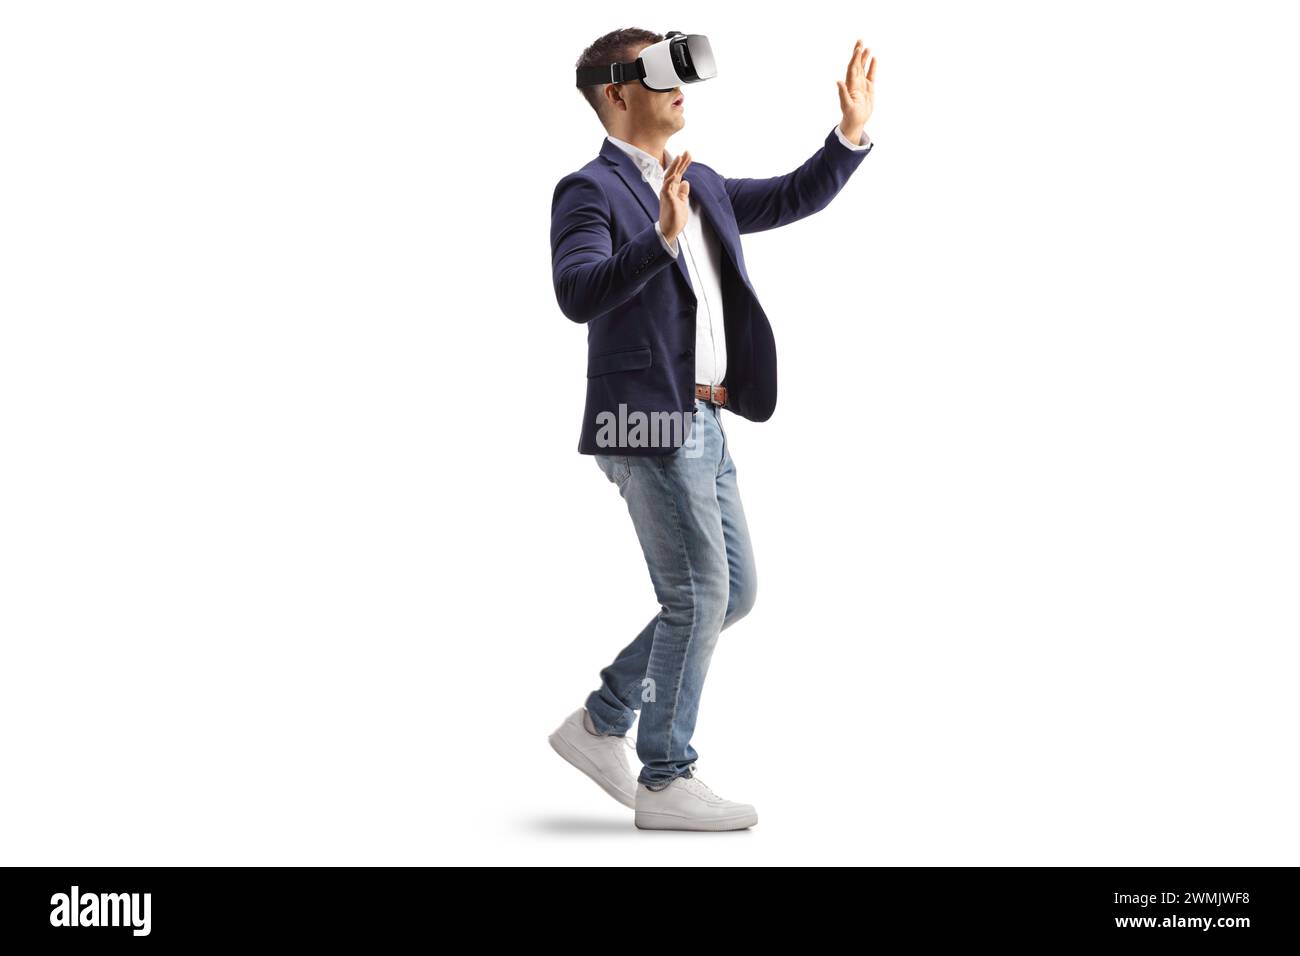 Homme d'affaires avec un casque VR marchant et touchant avec les mains isolées sur fond blanc Banque D'Images